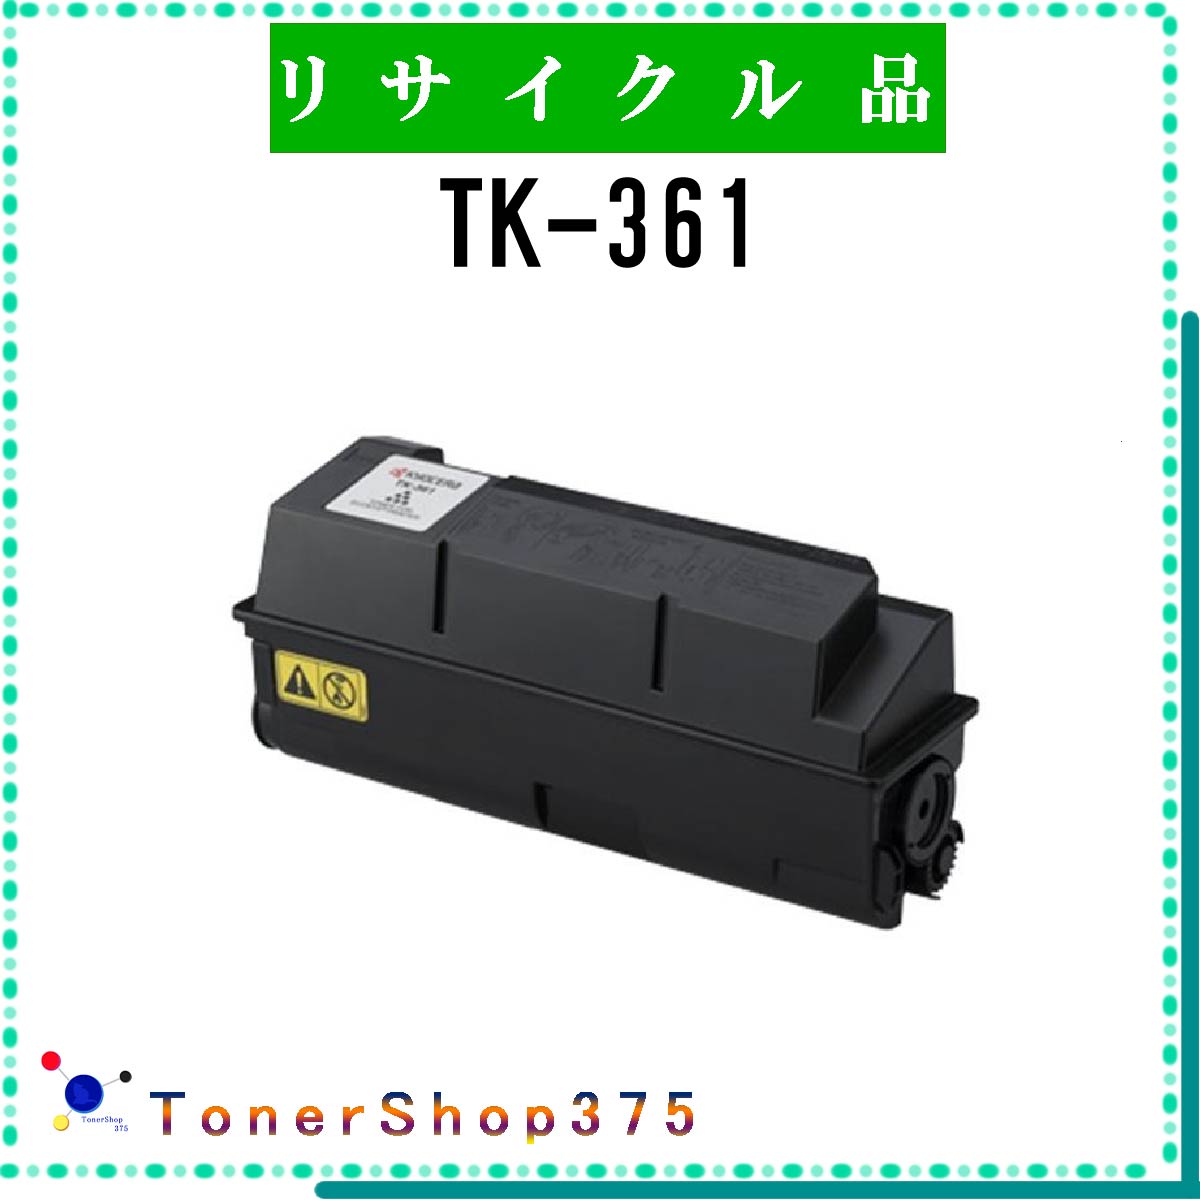 KYOCERA y TK-361 z TCN gi[ TCNHƉF/ISO擾H蒼 STMCF E&Q ݌ɕi Z